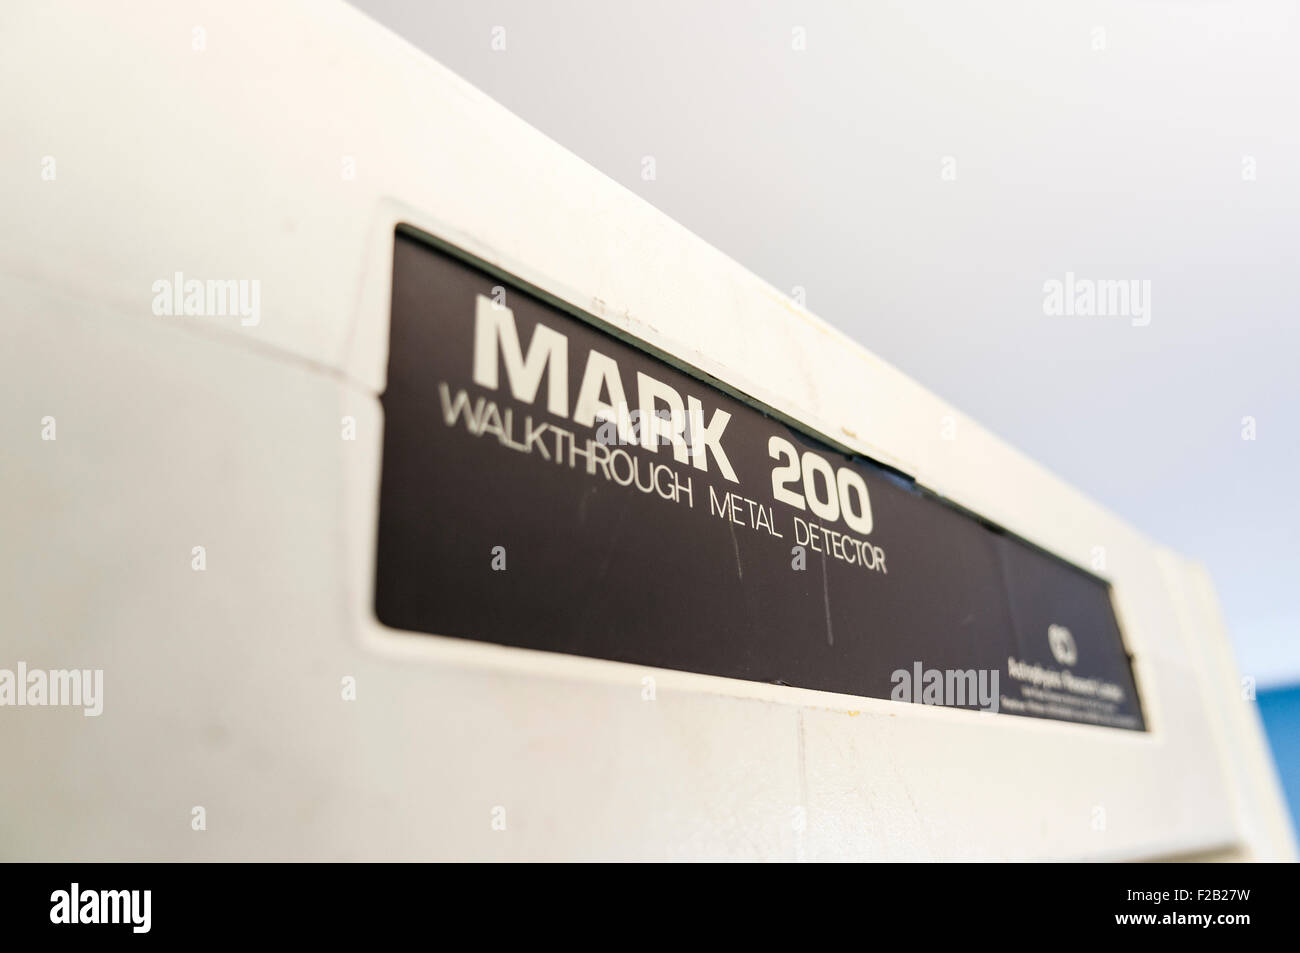 Mark 200 Walkthrough Metalldetektor aus Astrophysics Research Limited am Eingang zu einem sicheren Gebäude Stockfoto